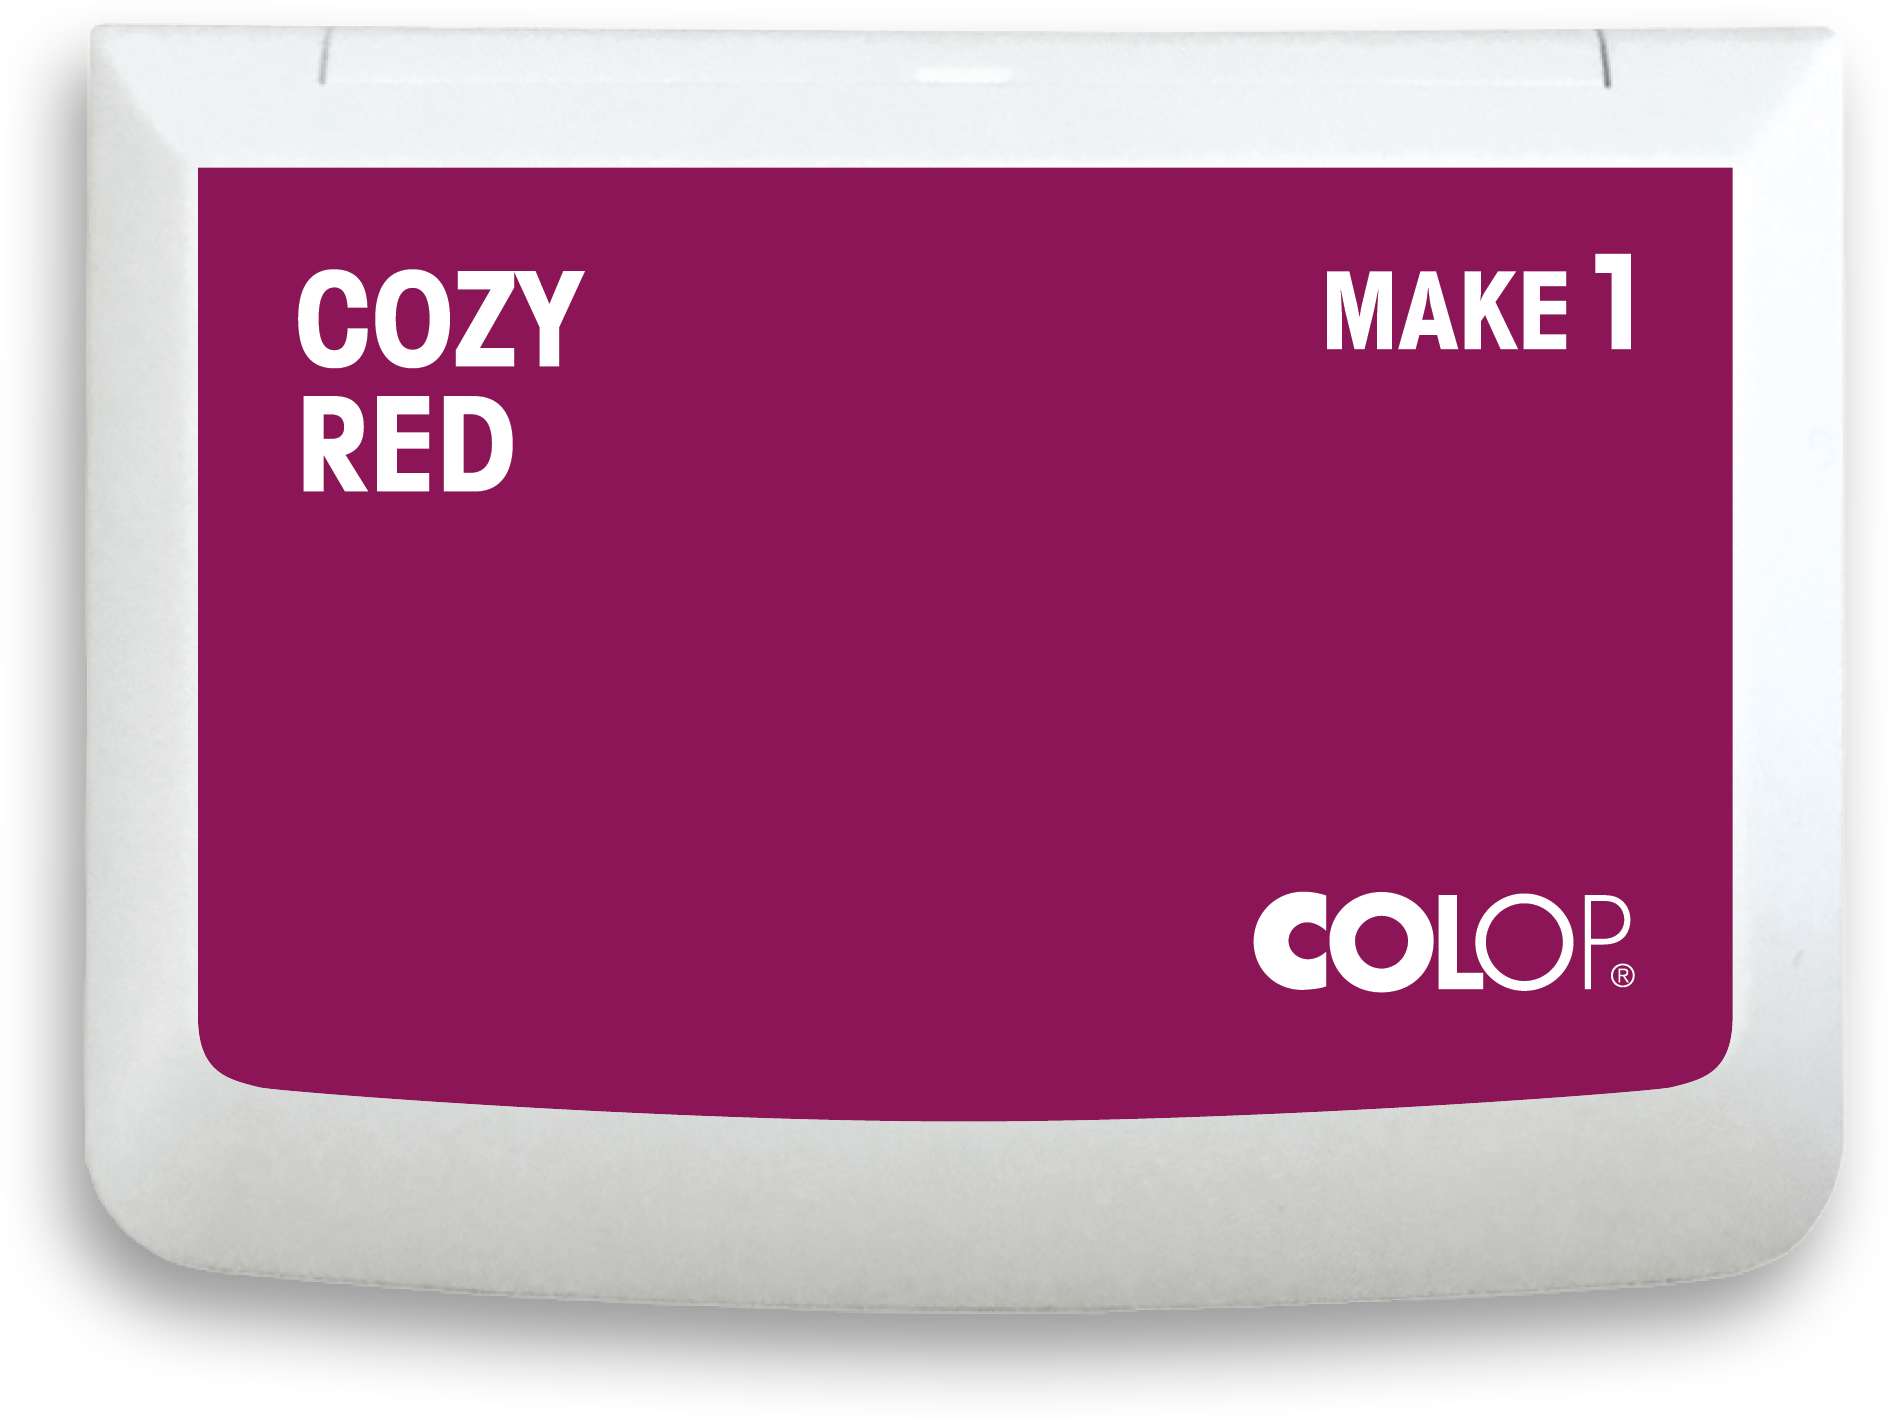 COLOP Tampon encreur 155114 MAKE1 cozy red